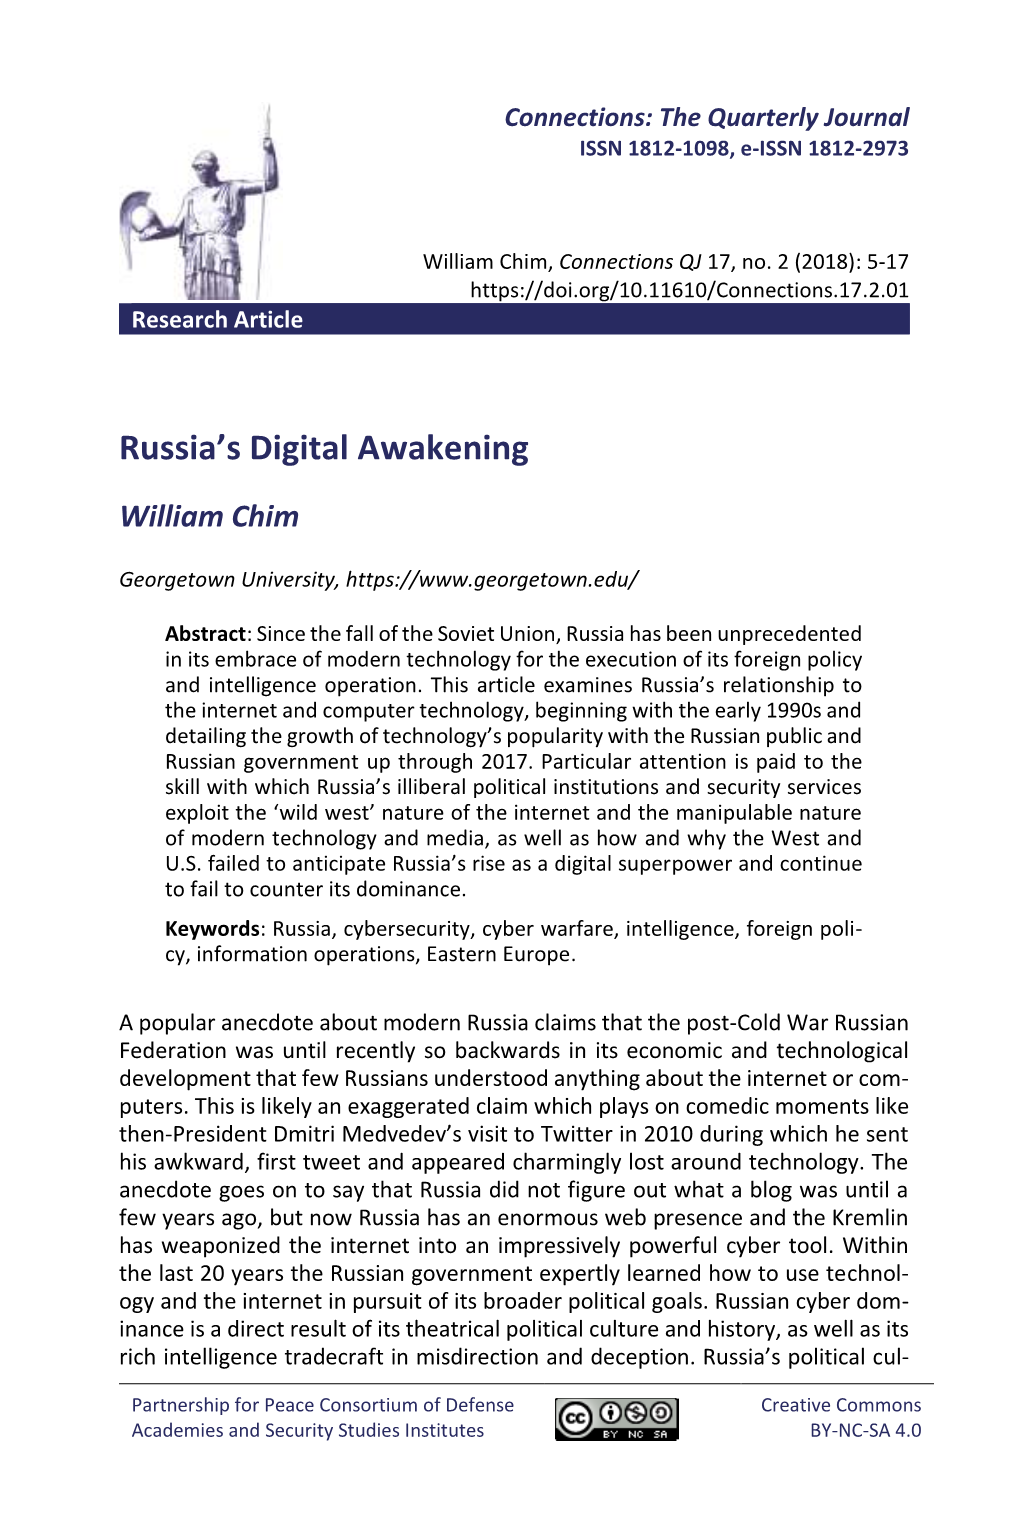 Russia's Digital Awakening